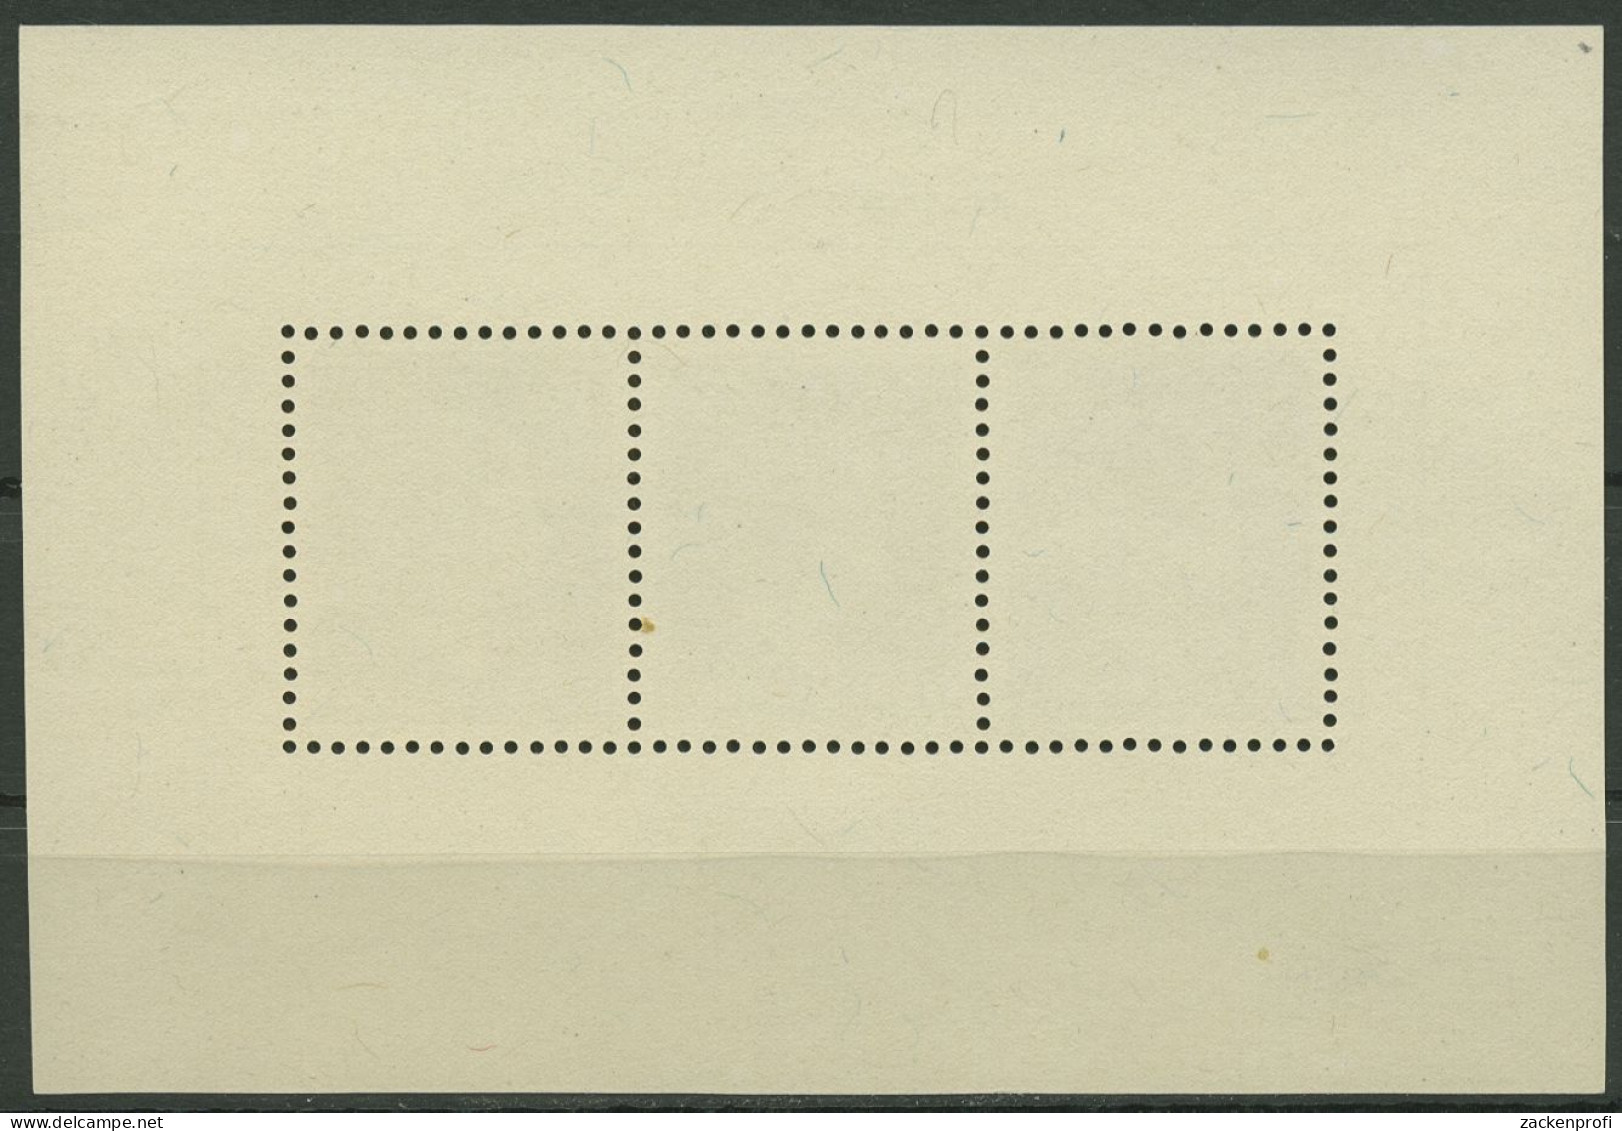 Luxemburg 1949 Herzogin Charlotte Block 7, Rückseite Fehler, Postfrisch (C95367) - Blocs & Hojas